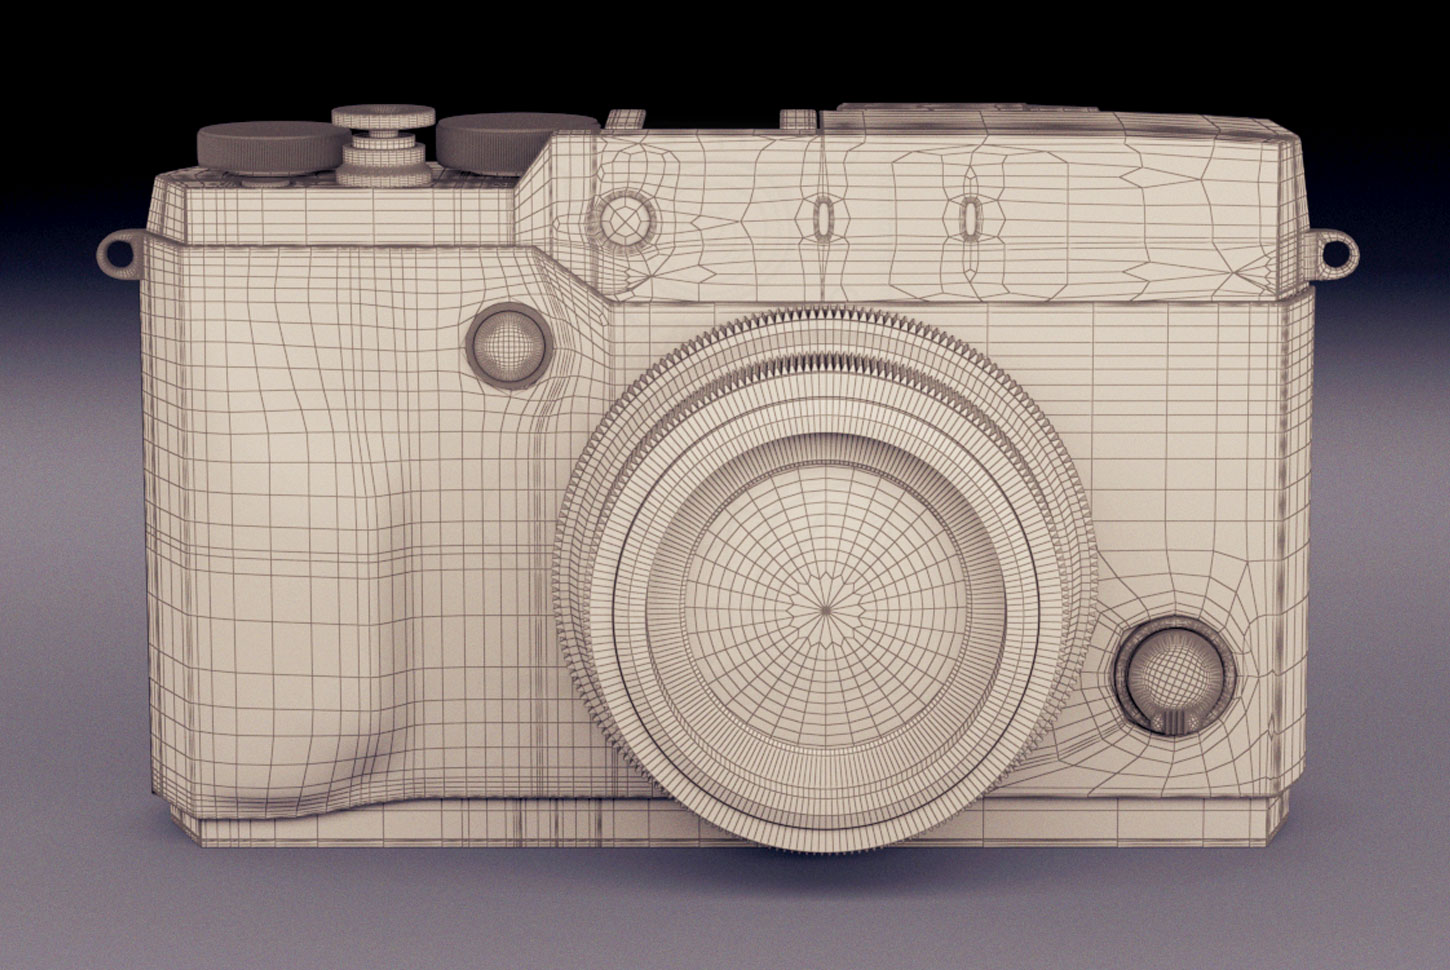 Cámara de Fotos Fujifilm X30 - Diseño 3D para imagen publicitaria